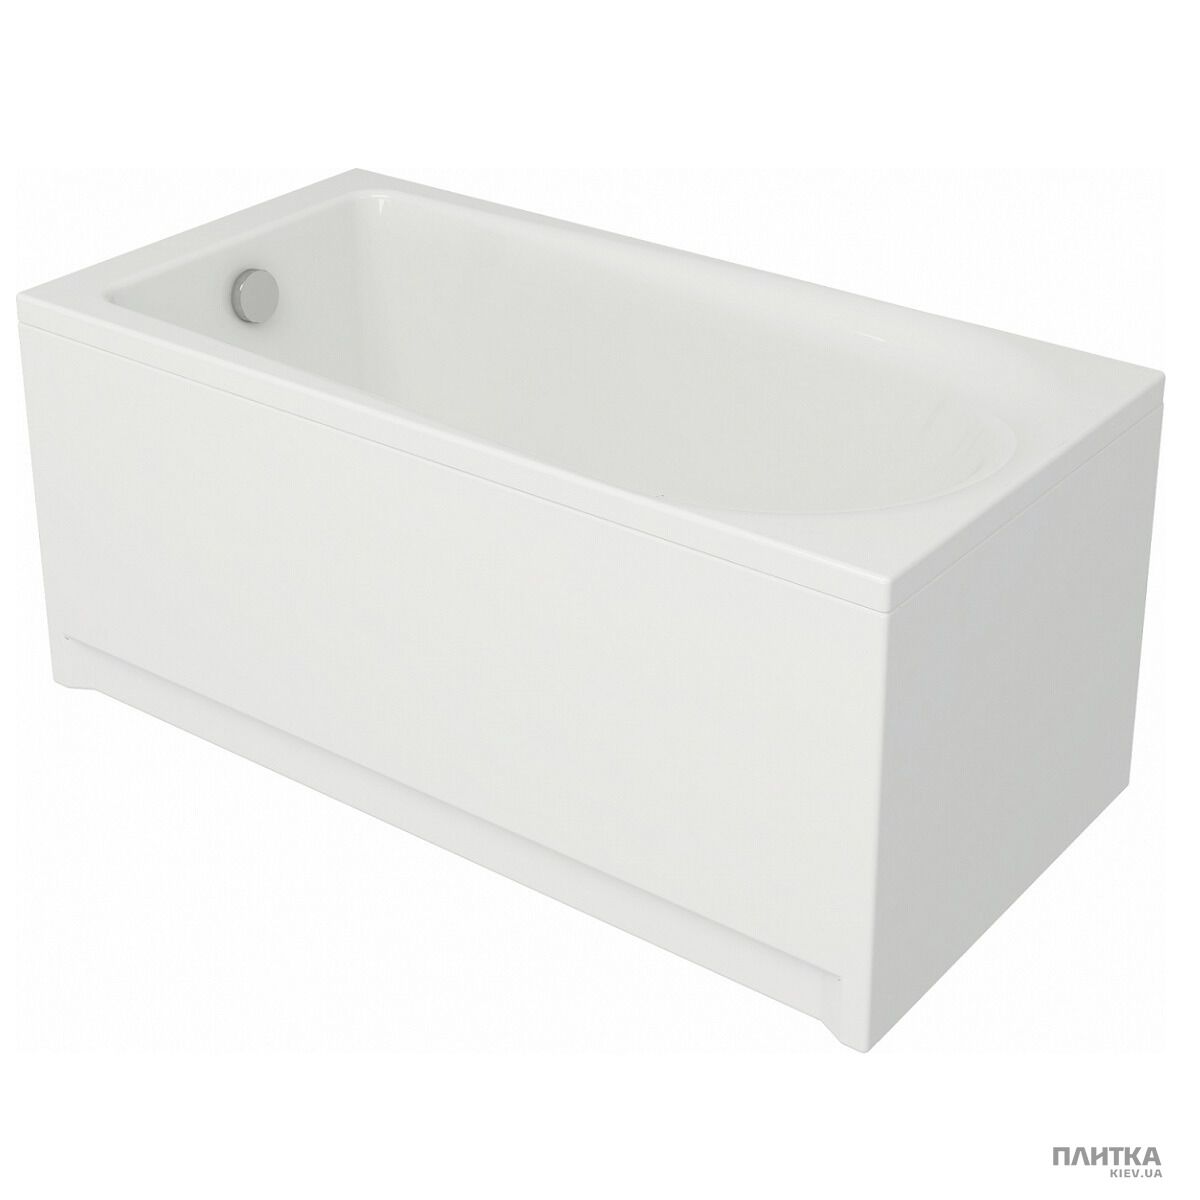 Акриловая ванна Cersanit Flavia 160x70 см белый